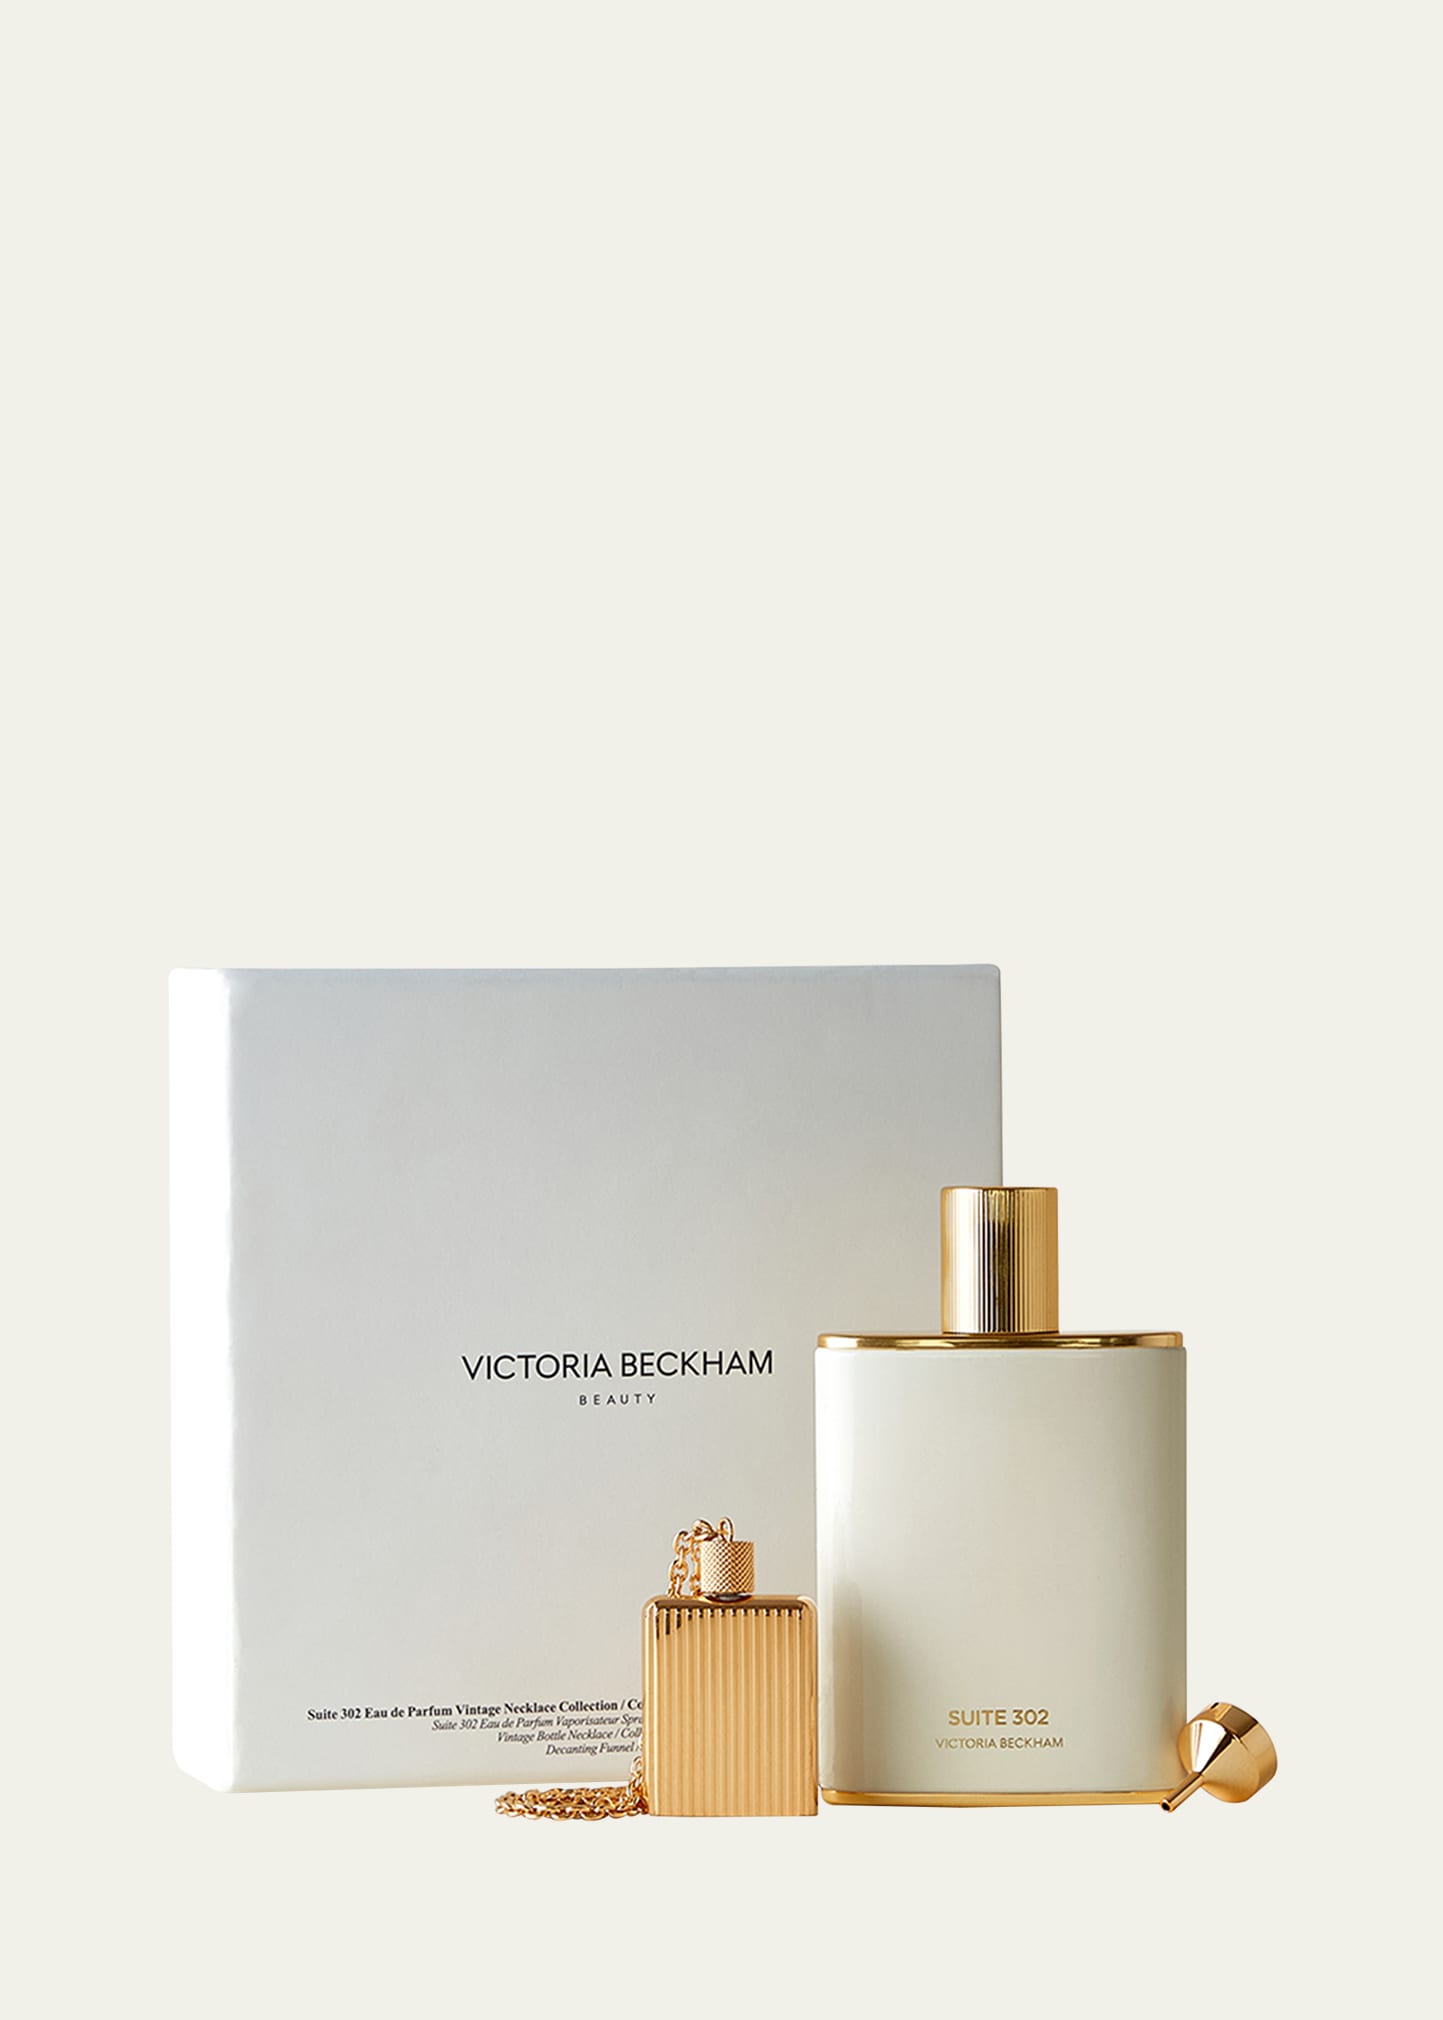 Victoria Beckham Beauty Suite 302 Eau De Parfum Vintage Necklace Collection